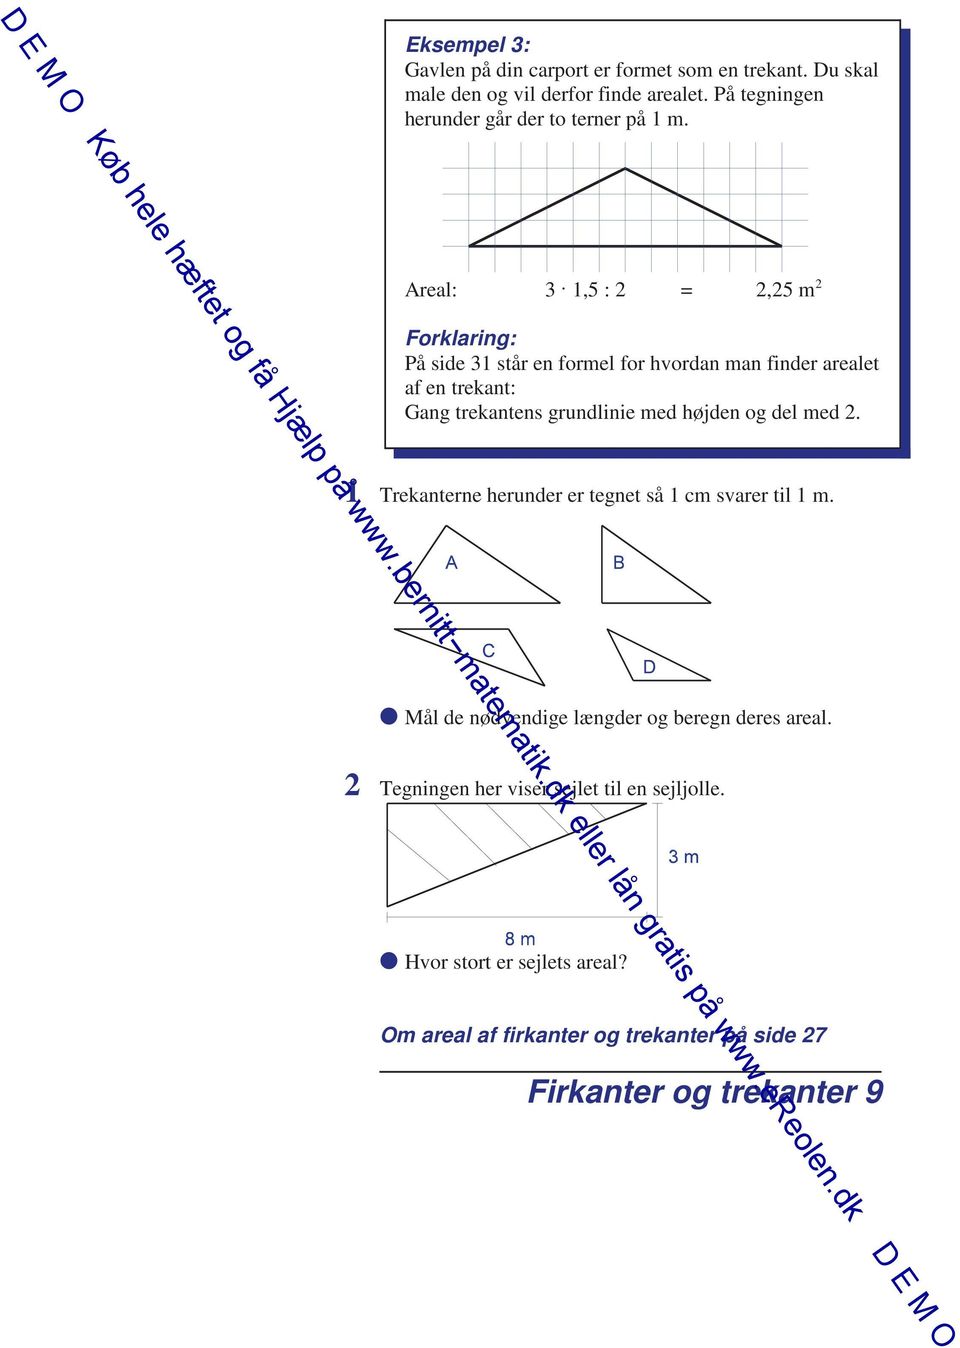 Areal: 3 1,5 : 2 = 2,25 m 2 Forklaring: På side 31 står en formel for hvordan man finder arealet af en trekant: Gang trekantens grundlinie med